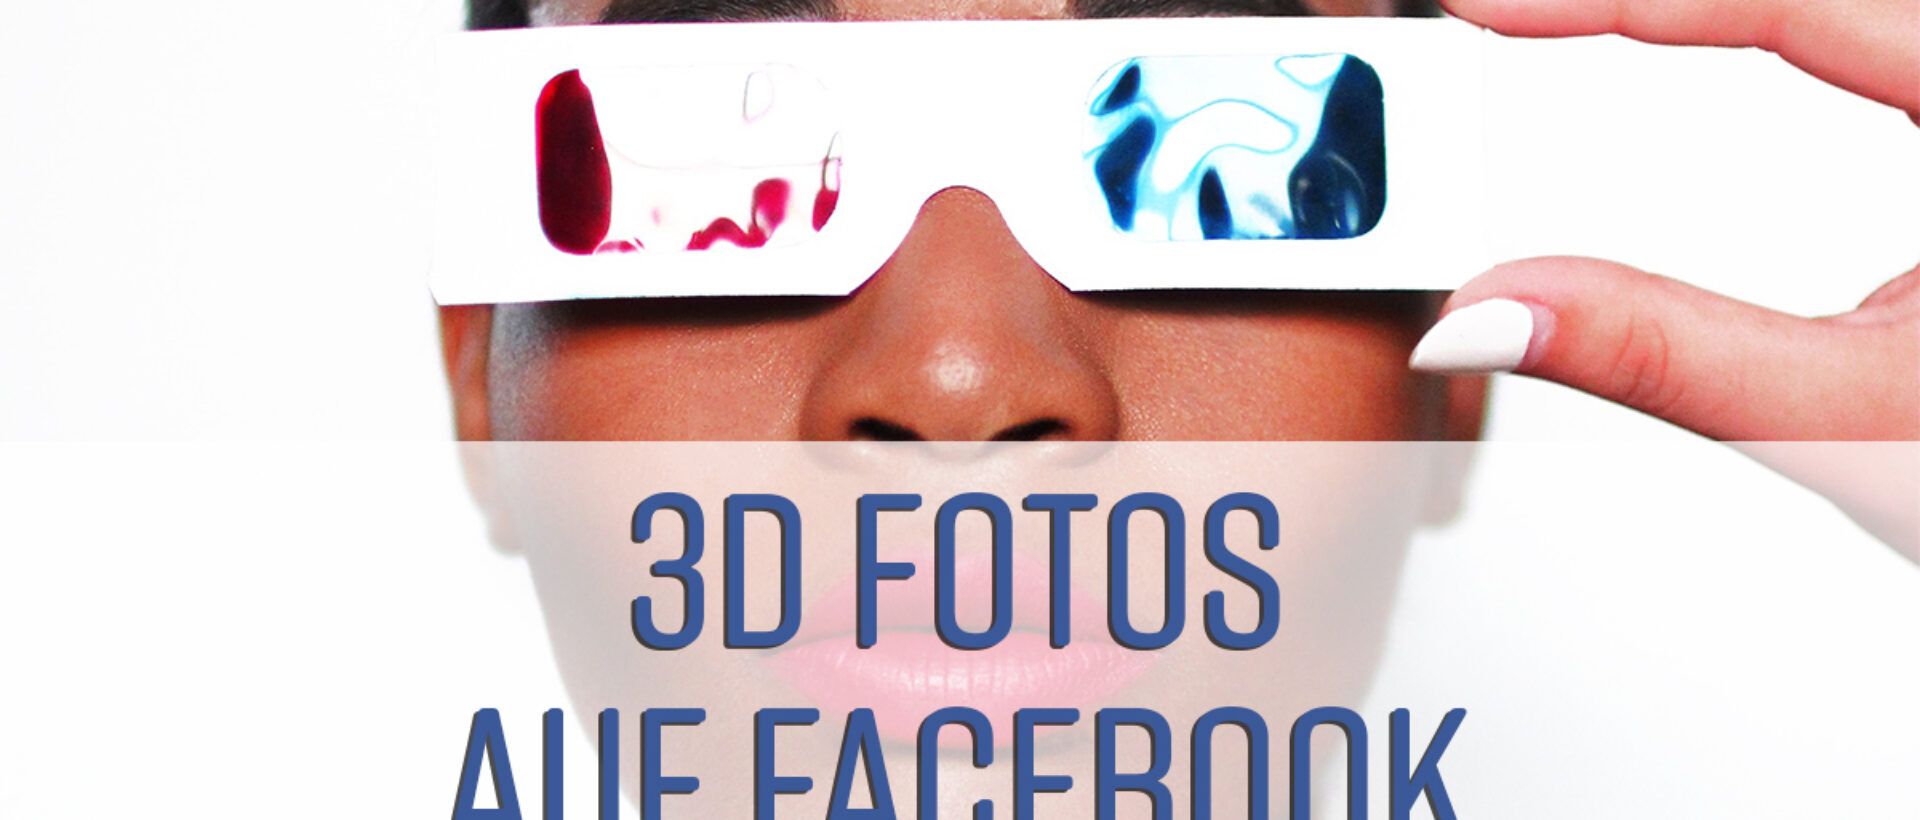 3D Fotos auf Facebook